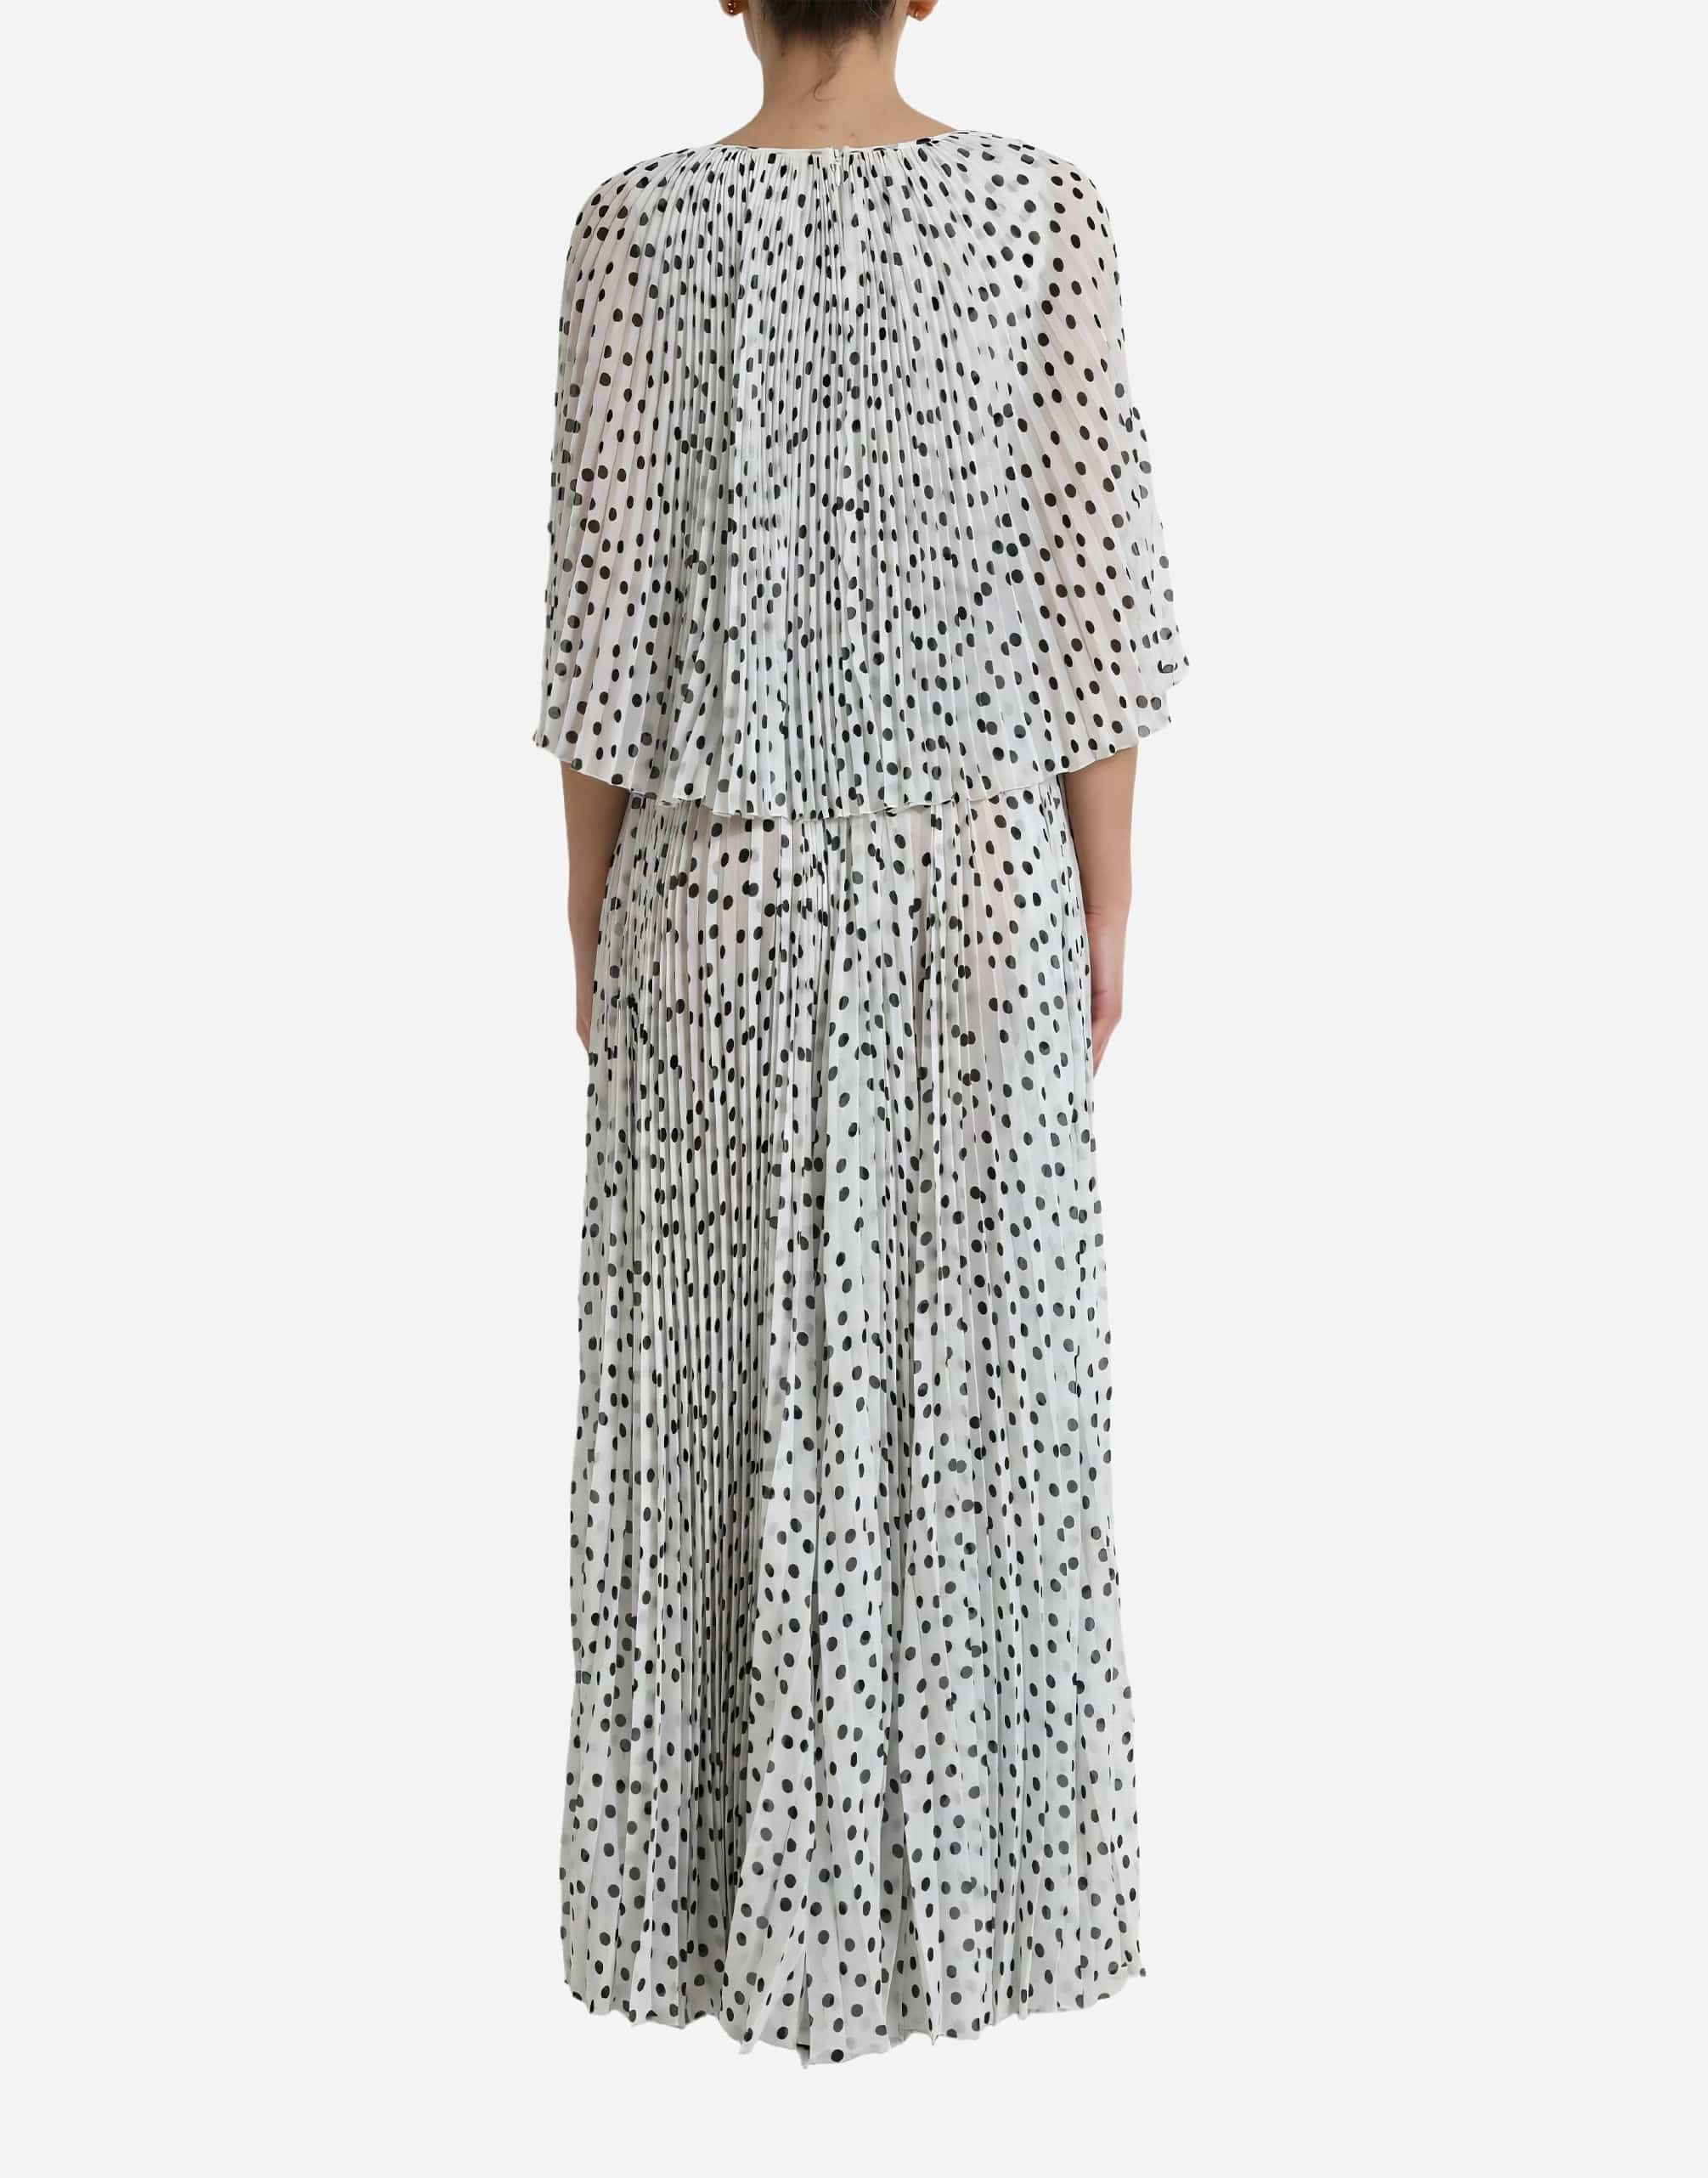 Dolce & Gabbana Polka Dot Pleated Maxi Dress